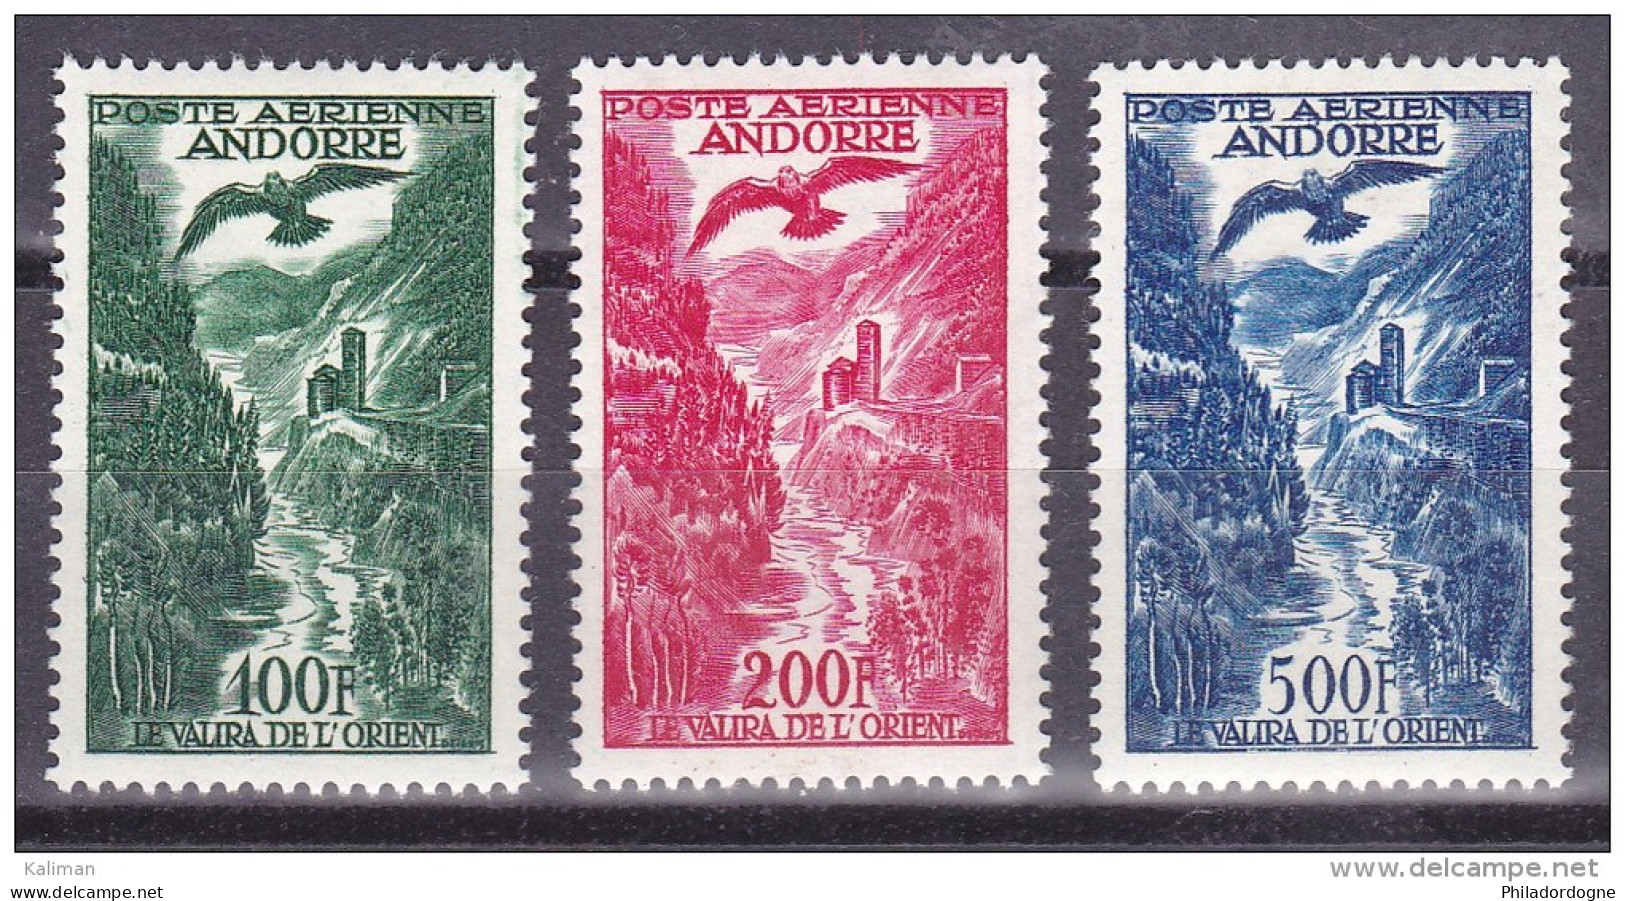 Andorre P.A. N° 2 à 4 Xx - Cote 192.5 Euros - Prix De Départ 55 Euros - Poste Aérienne